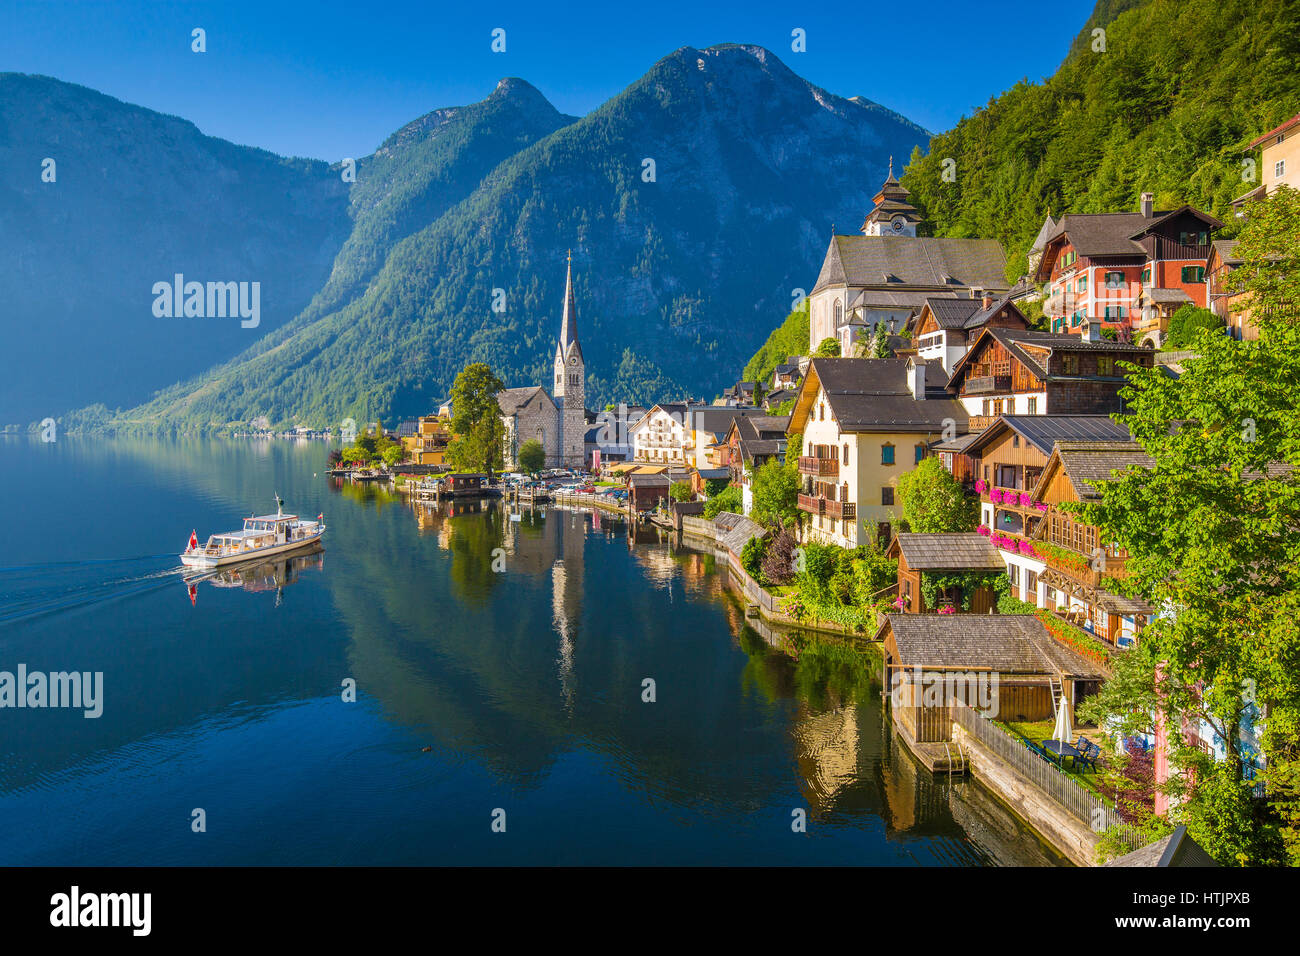 Malerischen Postkarten-Blick auf berühmte Hallstatt Bergdorf in den österreichischen Alpen mit Passagierschiff im schönen Morgenlicht im Sommer Stockfoto